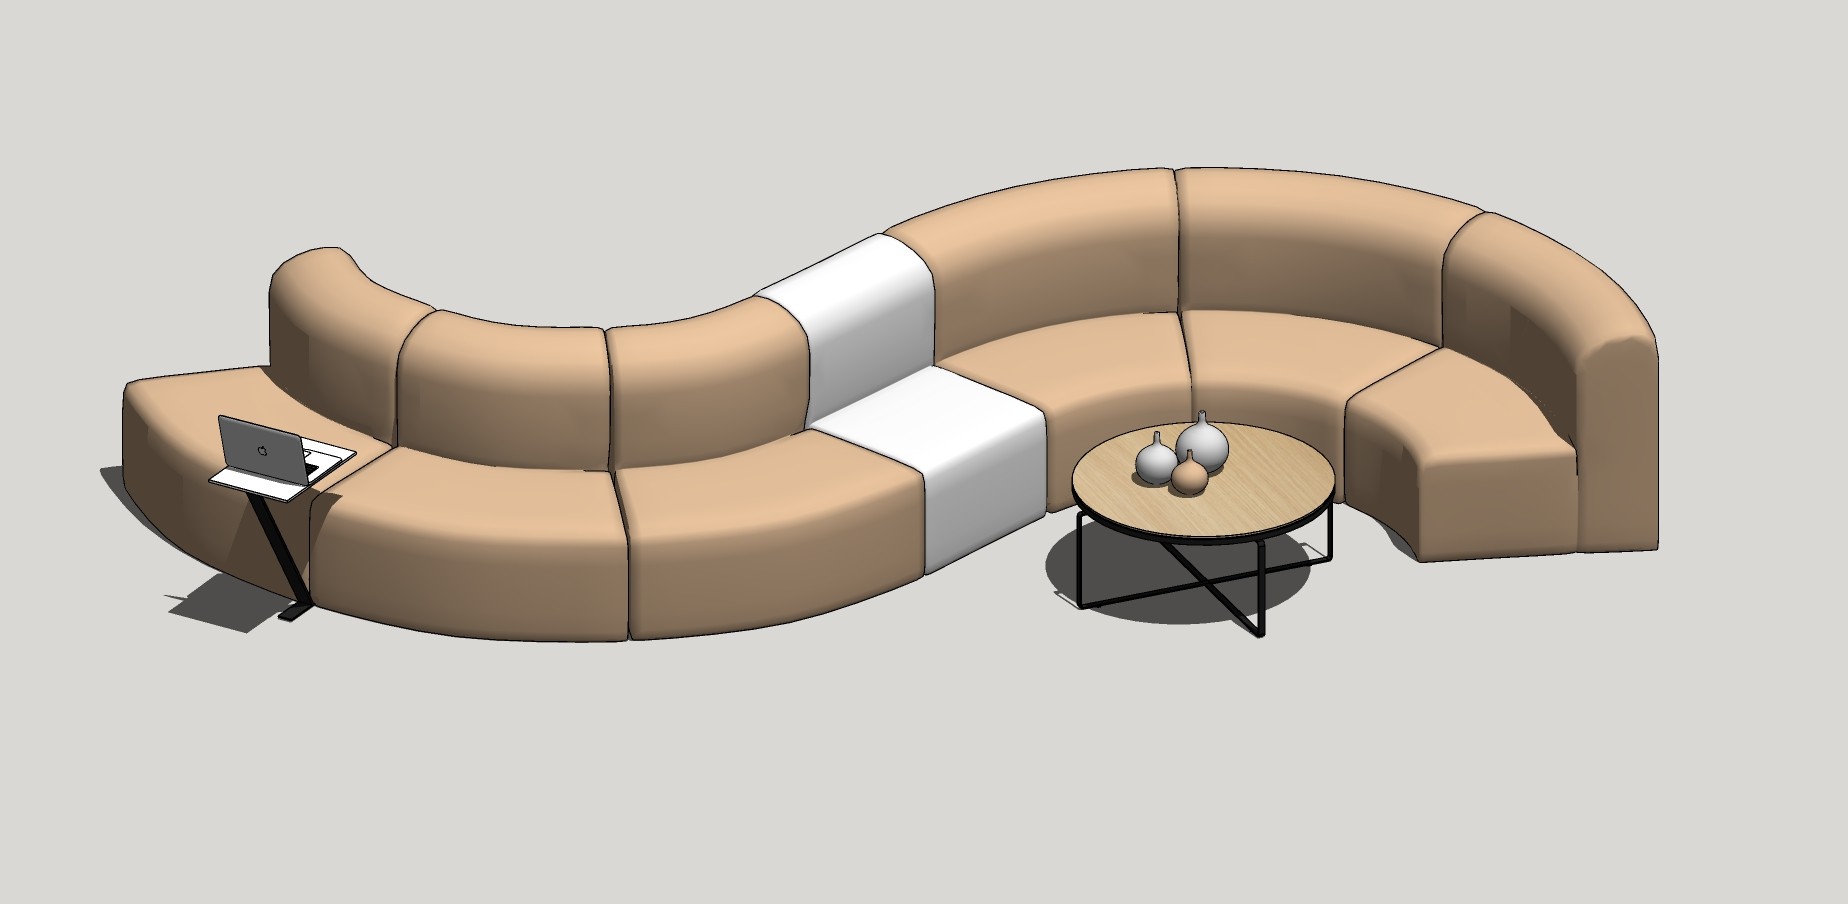 72现代弧形沙发 异形沙发  布艺沙发 皮革沙发 公共沙发座椅 公共休息区沙发su草图模型下载